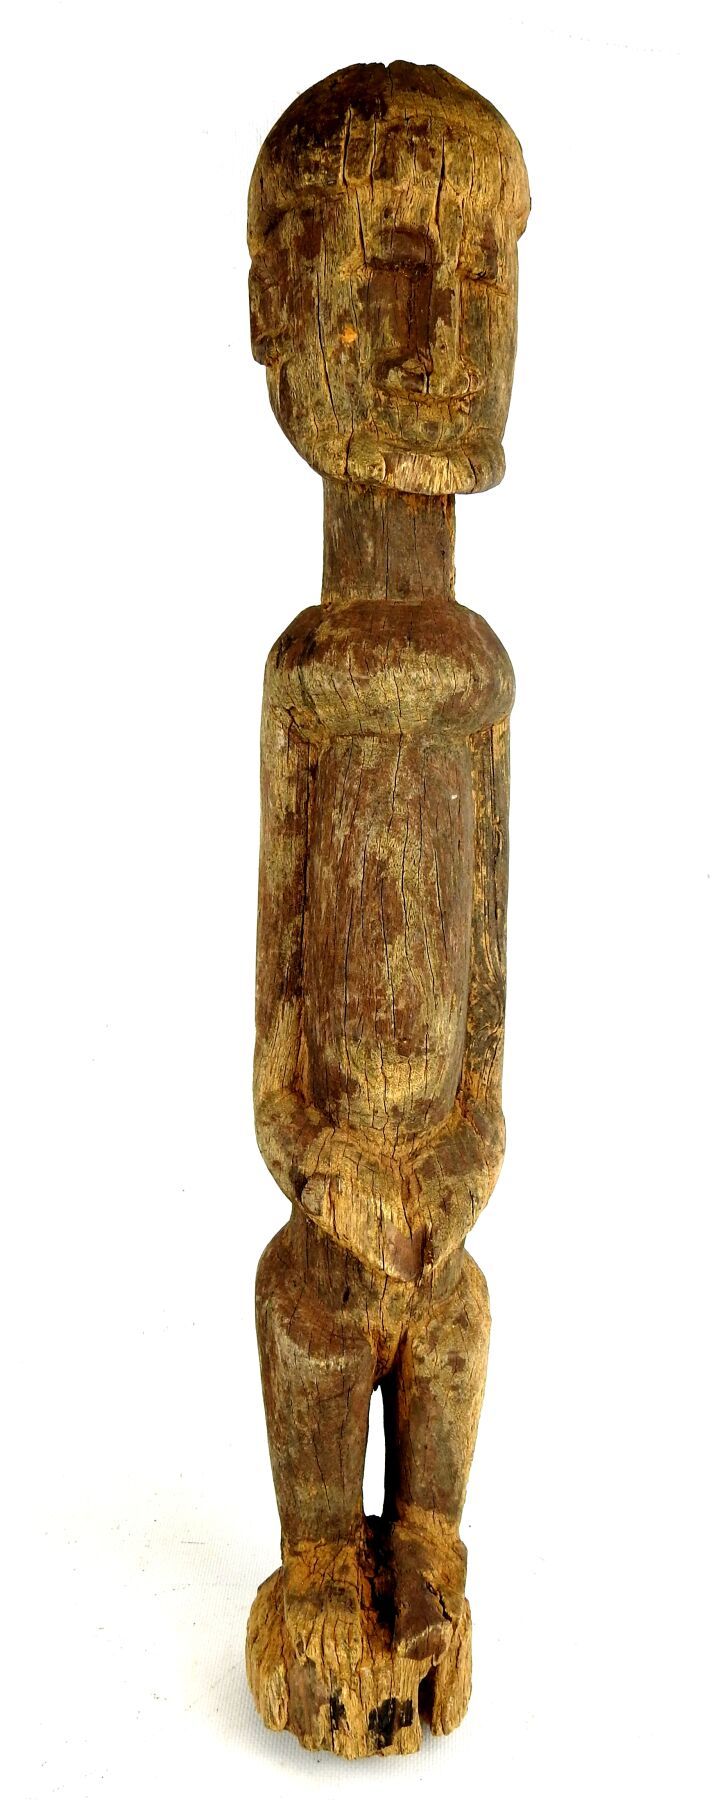 Null DOGON，马里。
有沟壑的硬木。
拟人化的雕像，呈现出一个站立的雌雄同体的形象，手臂沿着身体放置。
高度：60厘米。
小事故和旧损害。